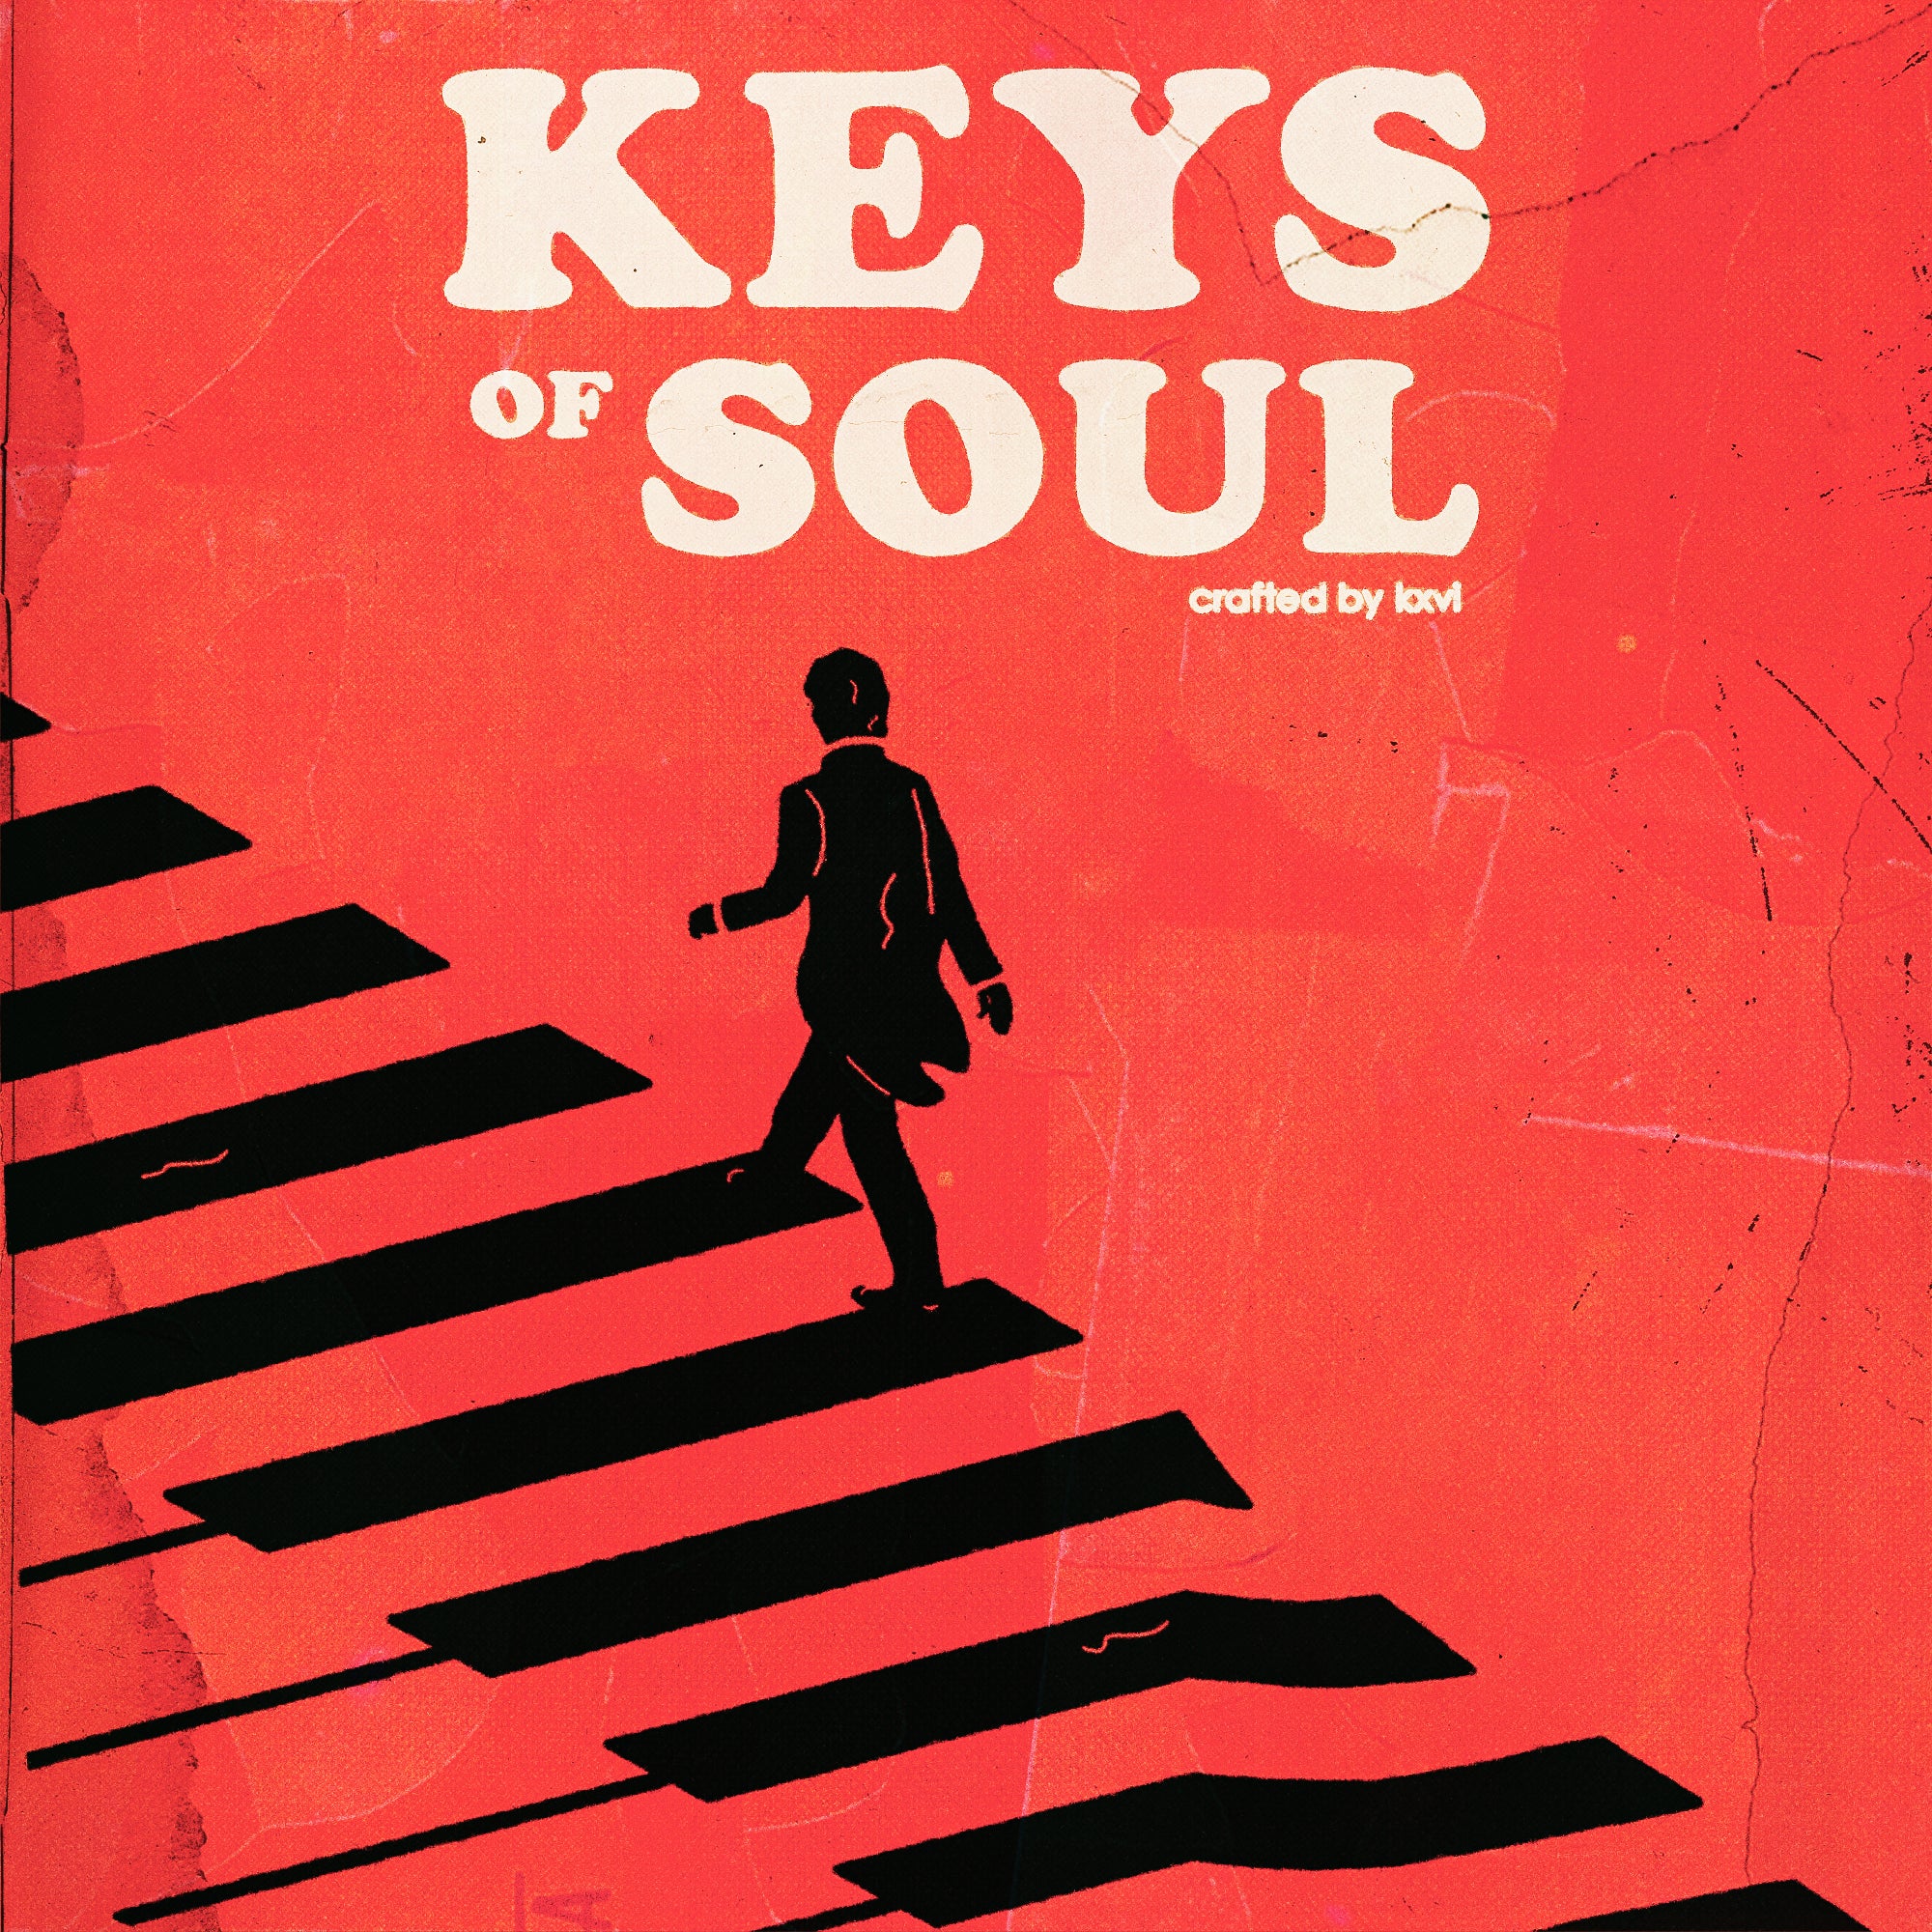 🎹 KXVI - "KEYS OF SOUL" MIDI KIT